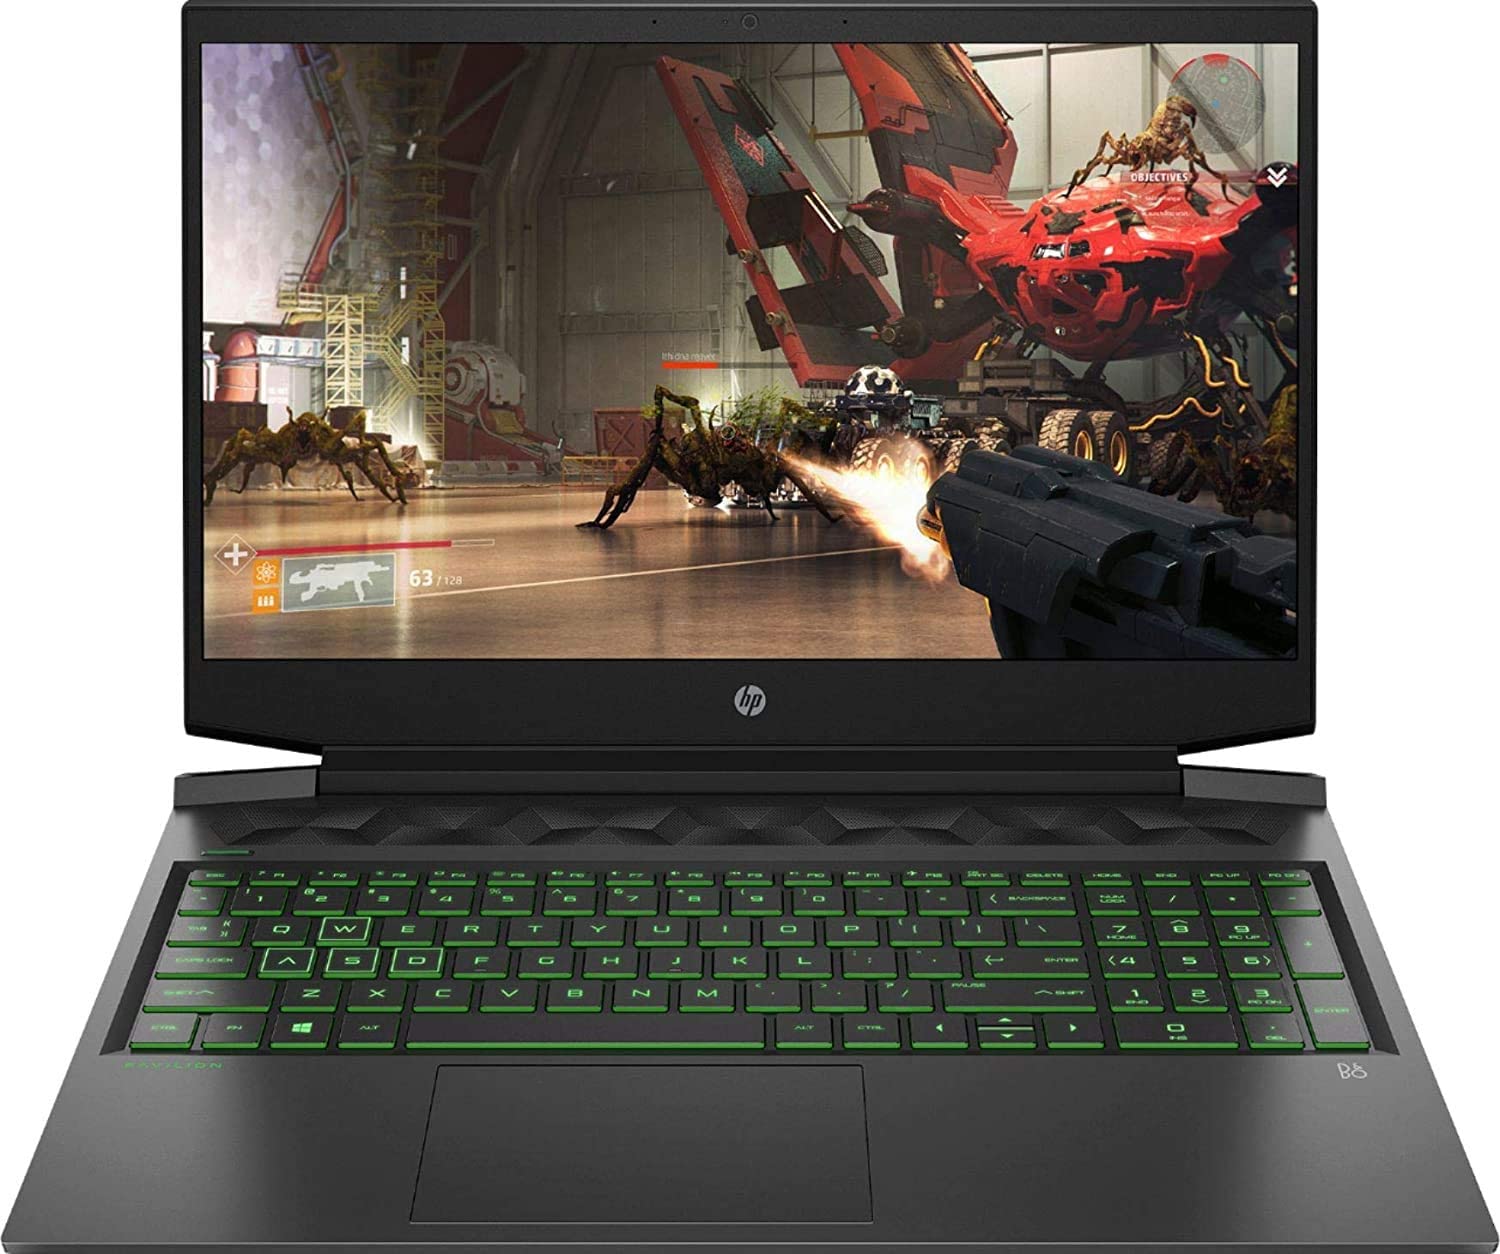 HP Pavilion 16.1 inch Gaming Laptop